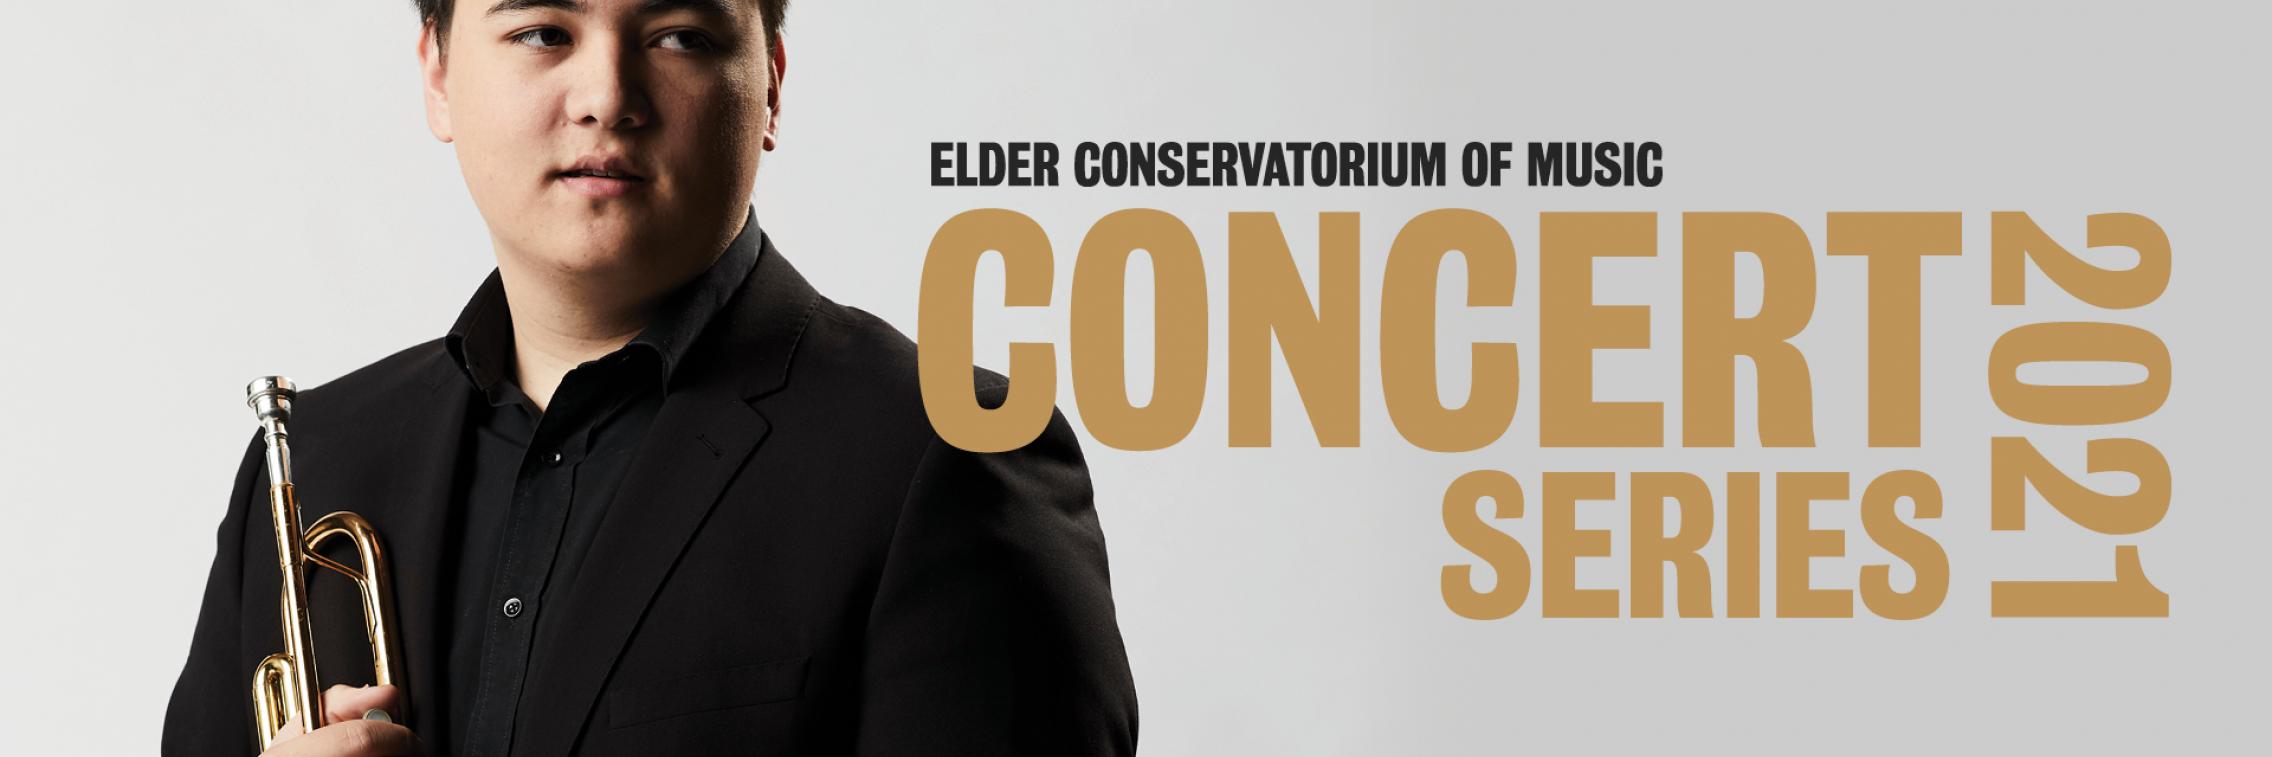 Elder Conservatorium Concert Series